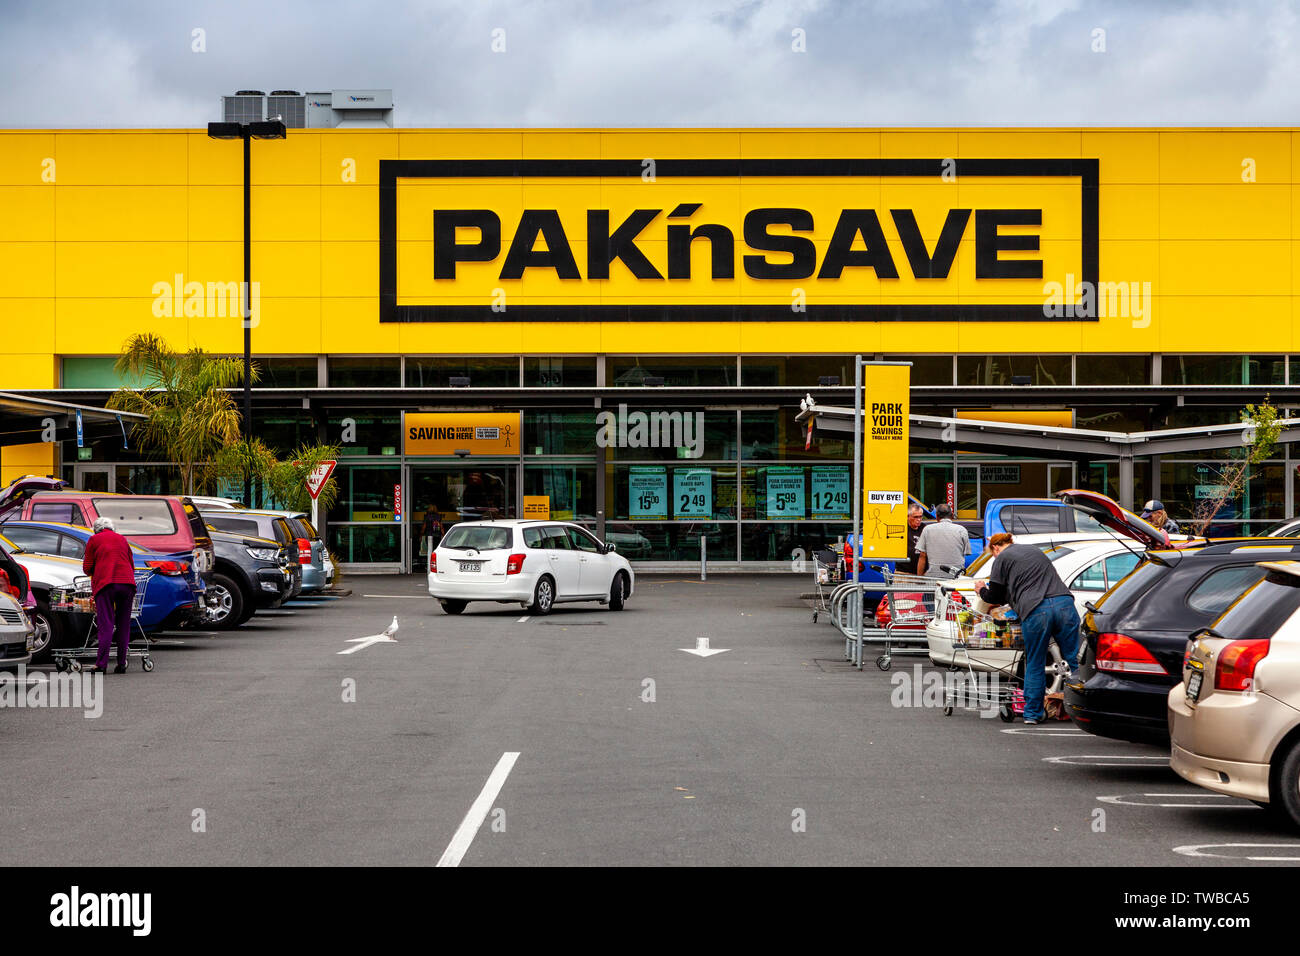 Persone caricando gli acquisti al supermercato PaknSave, Whangarei, Isola del nord, Nuova Zelanda Foto Stock